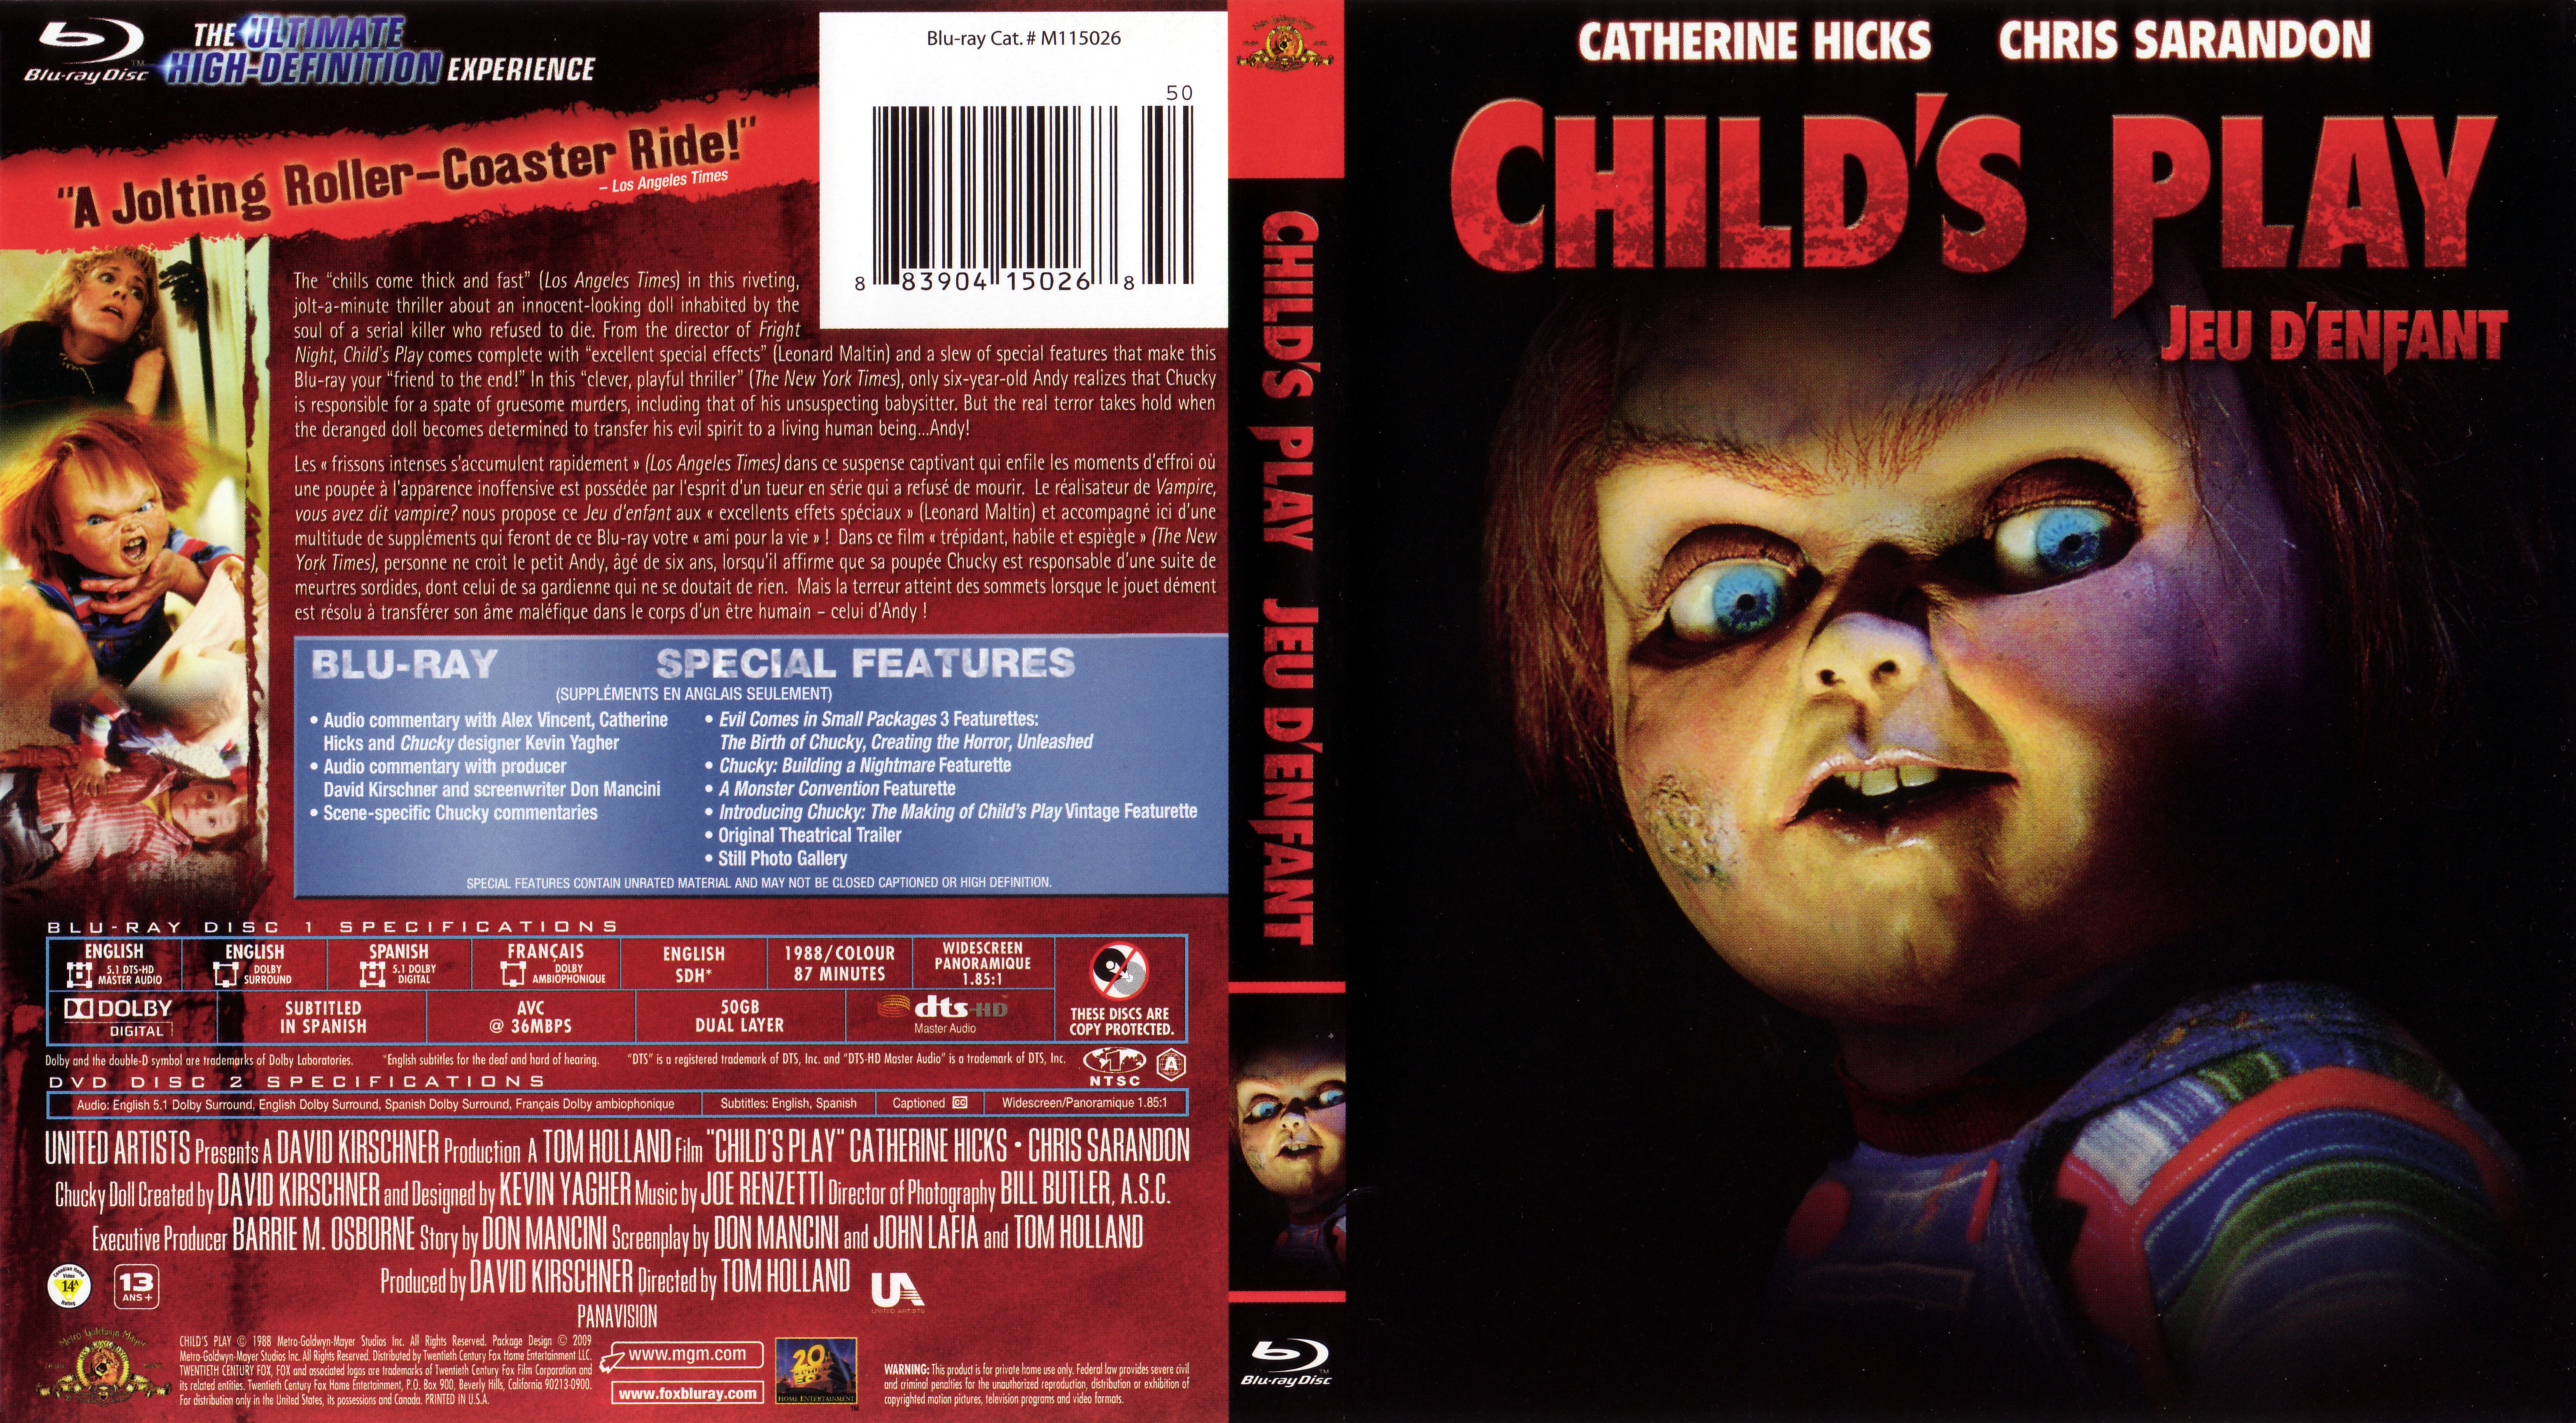 Jaquette DVD Chucky jeu d